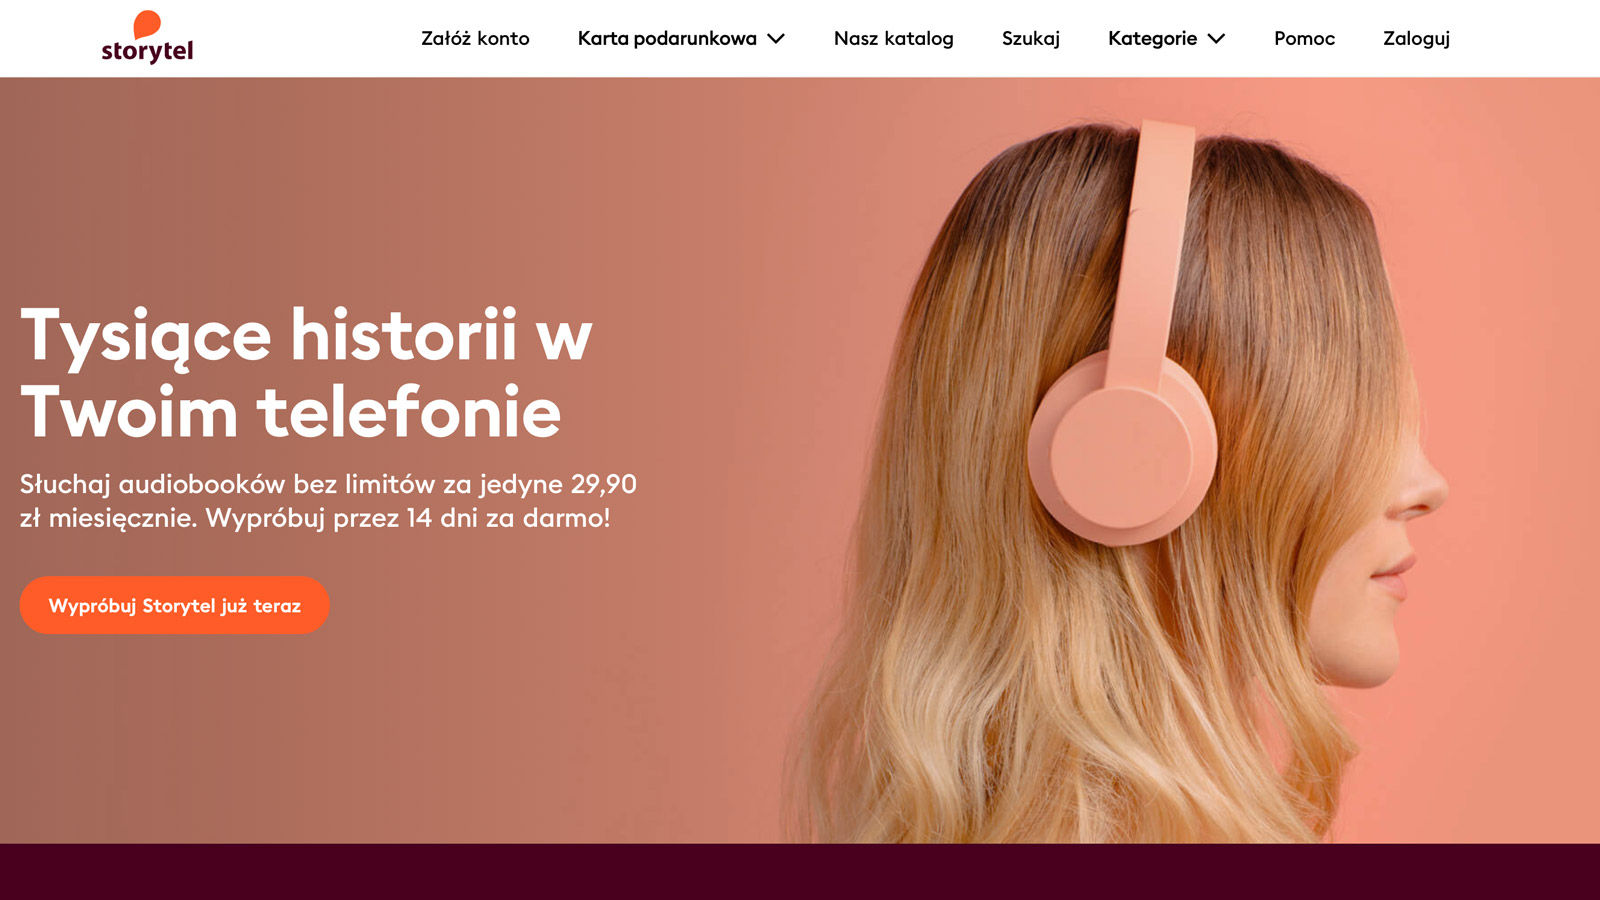 Storytel zaczyna współpracę z kolejnym artystą! influencer marketing mediarun storytel 2019